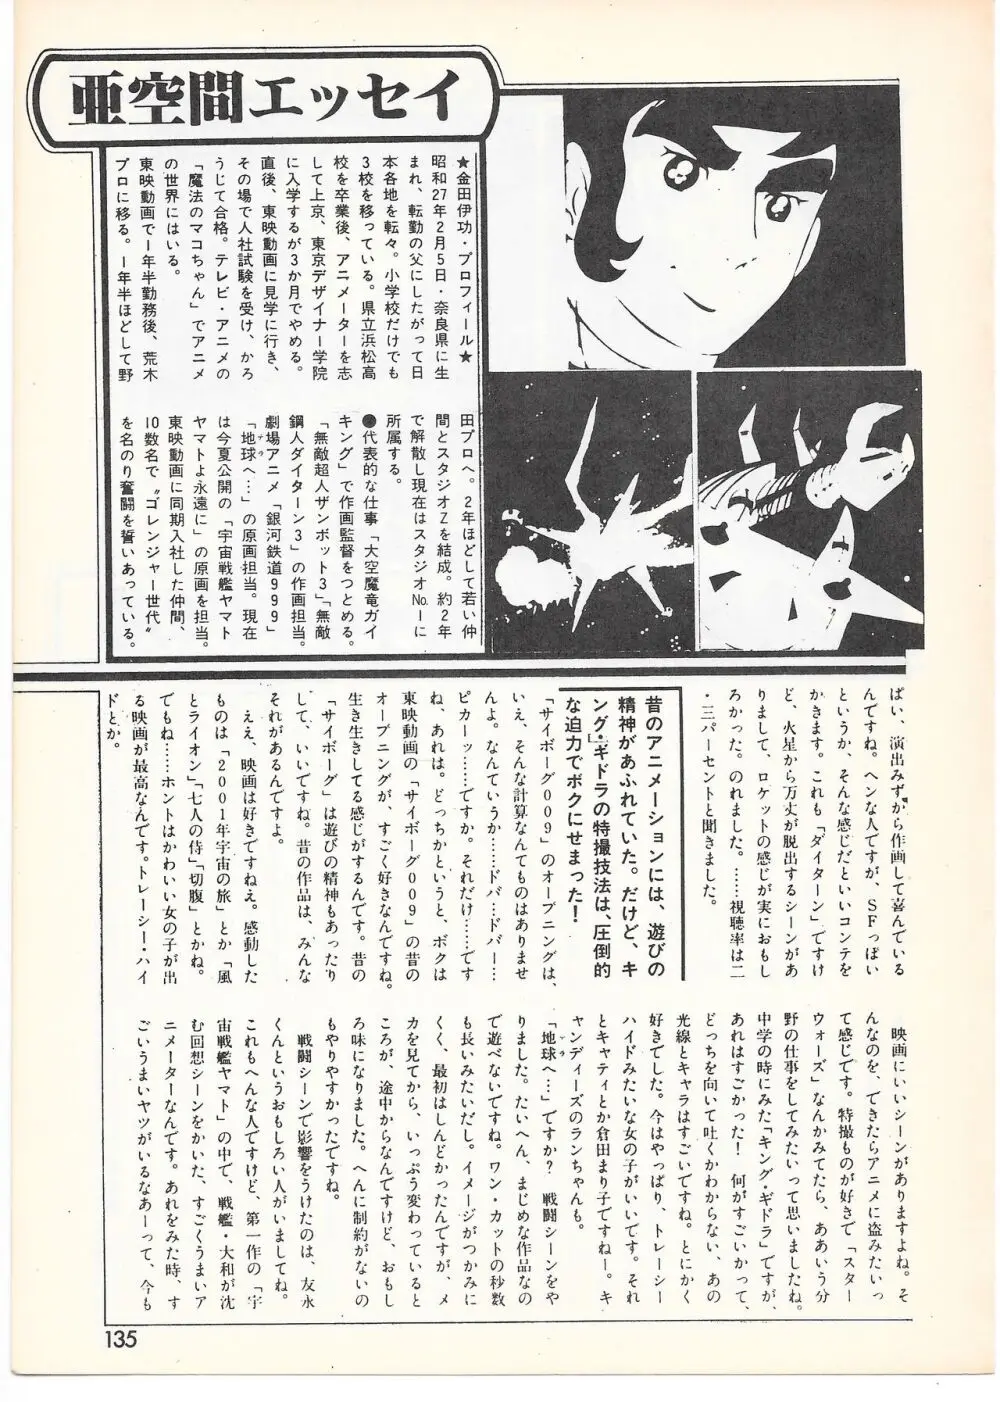 THE ANIMATOR 1 金田伊功特集号 130ページ